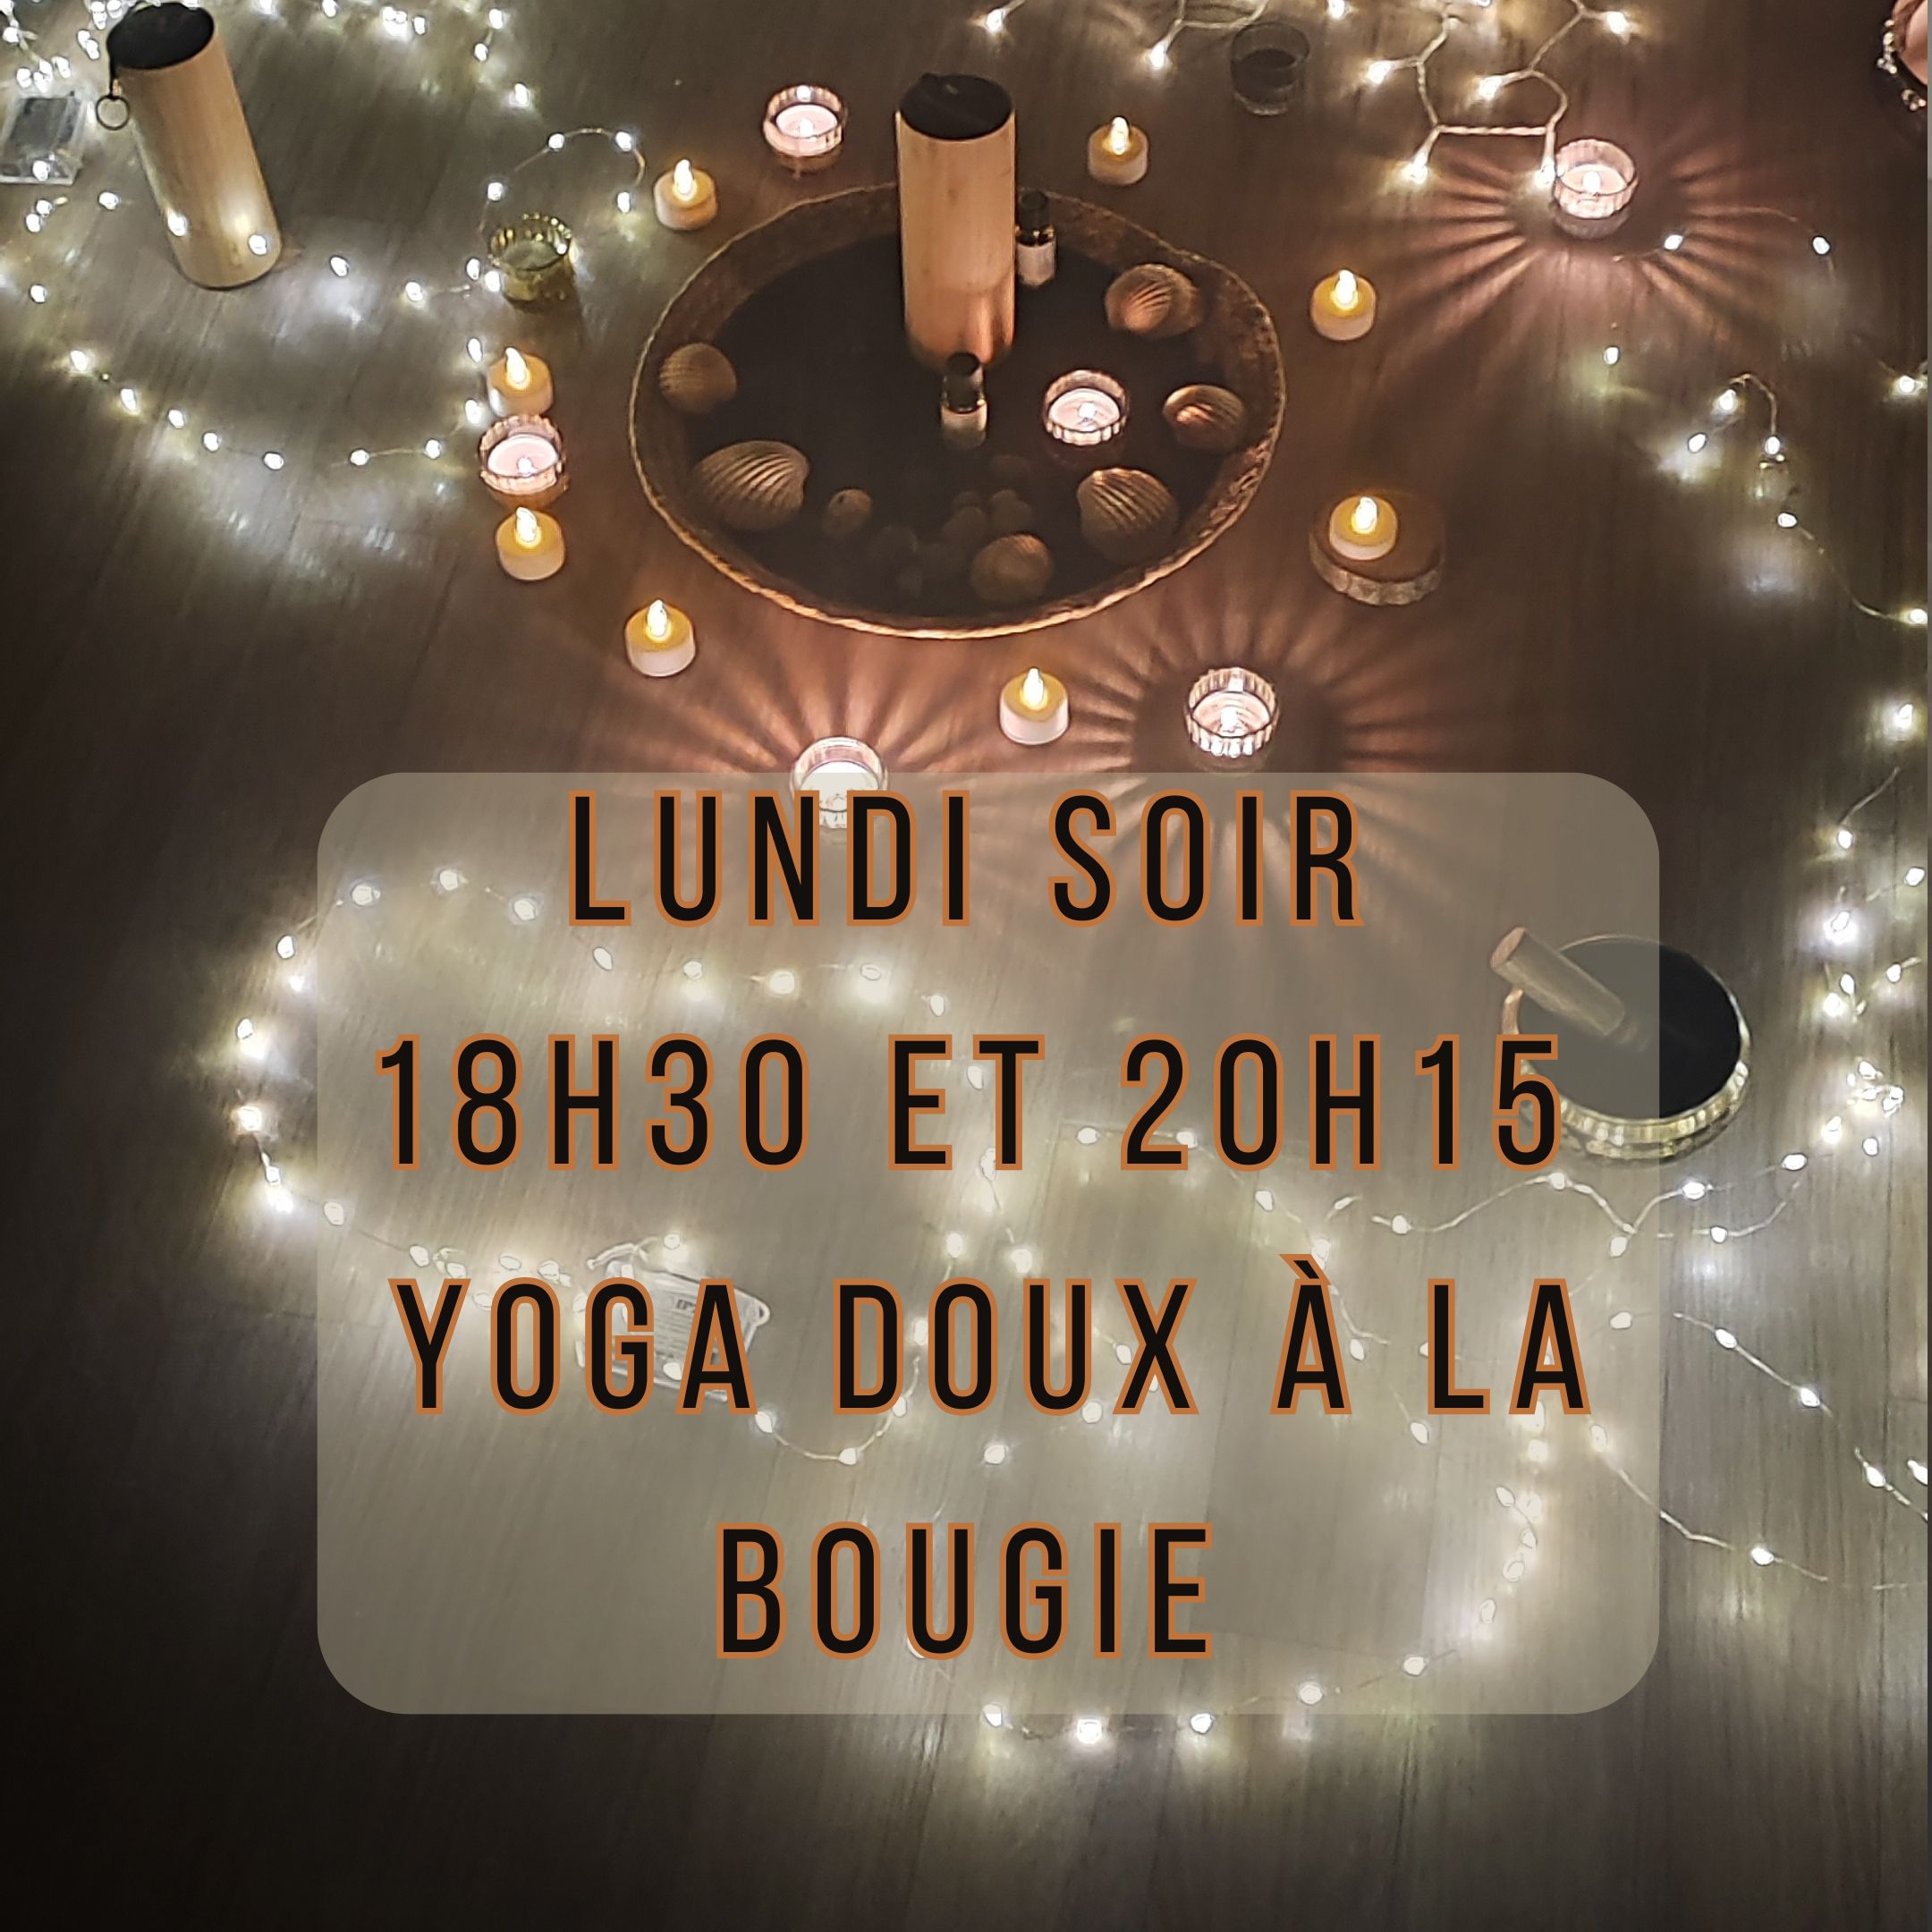 Yoga doux à la bougie – Ciboure Lundi 18h30 et 20H15